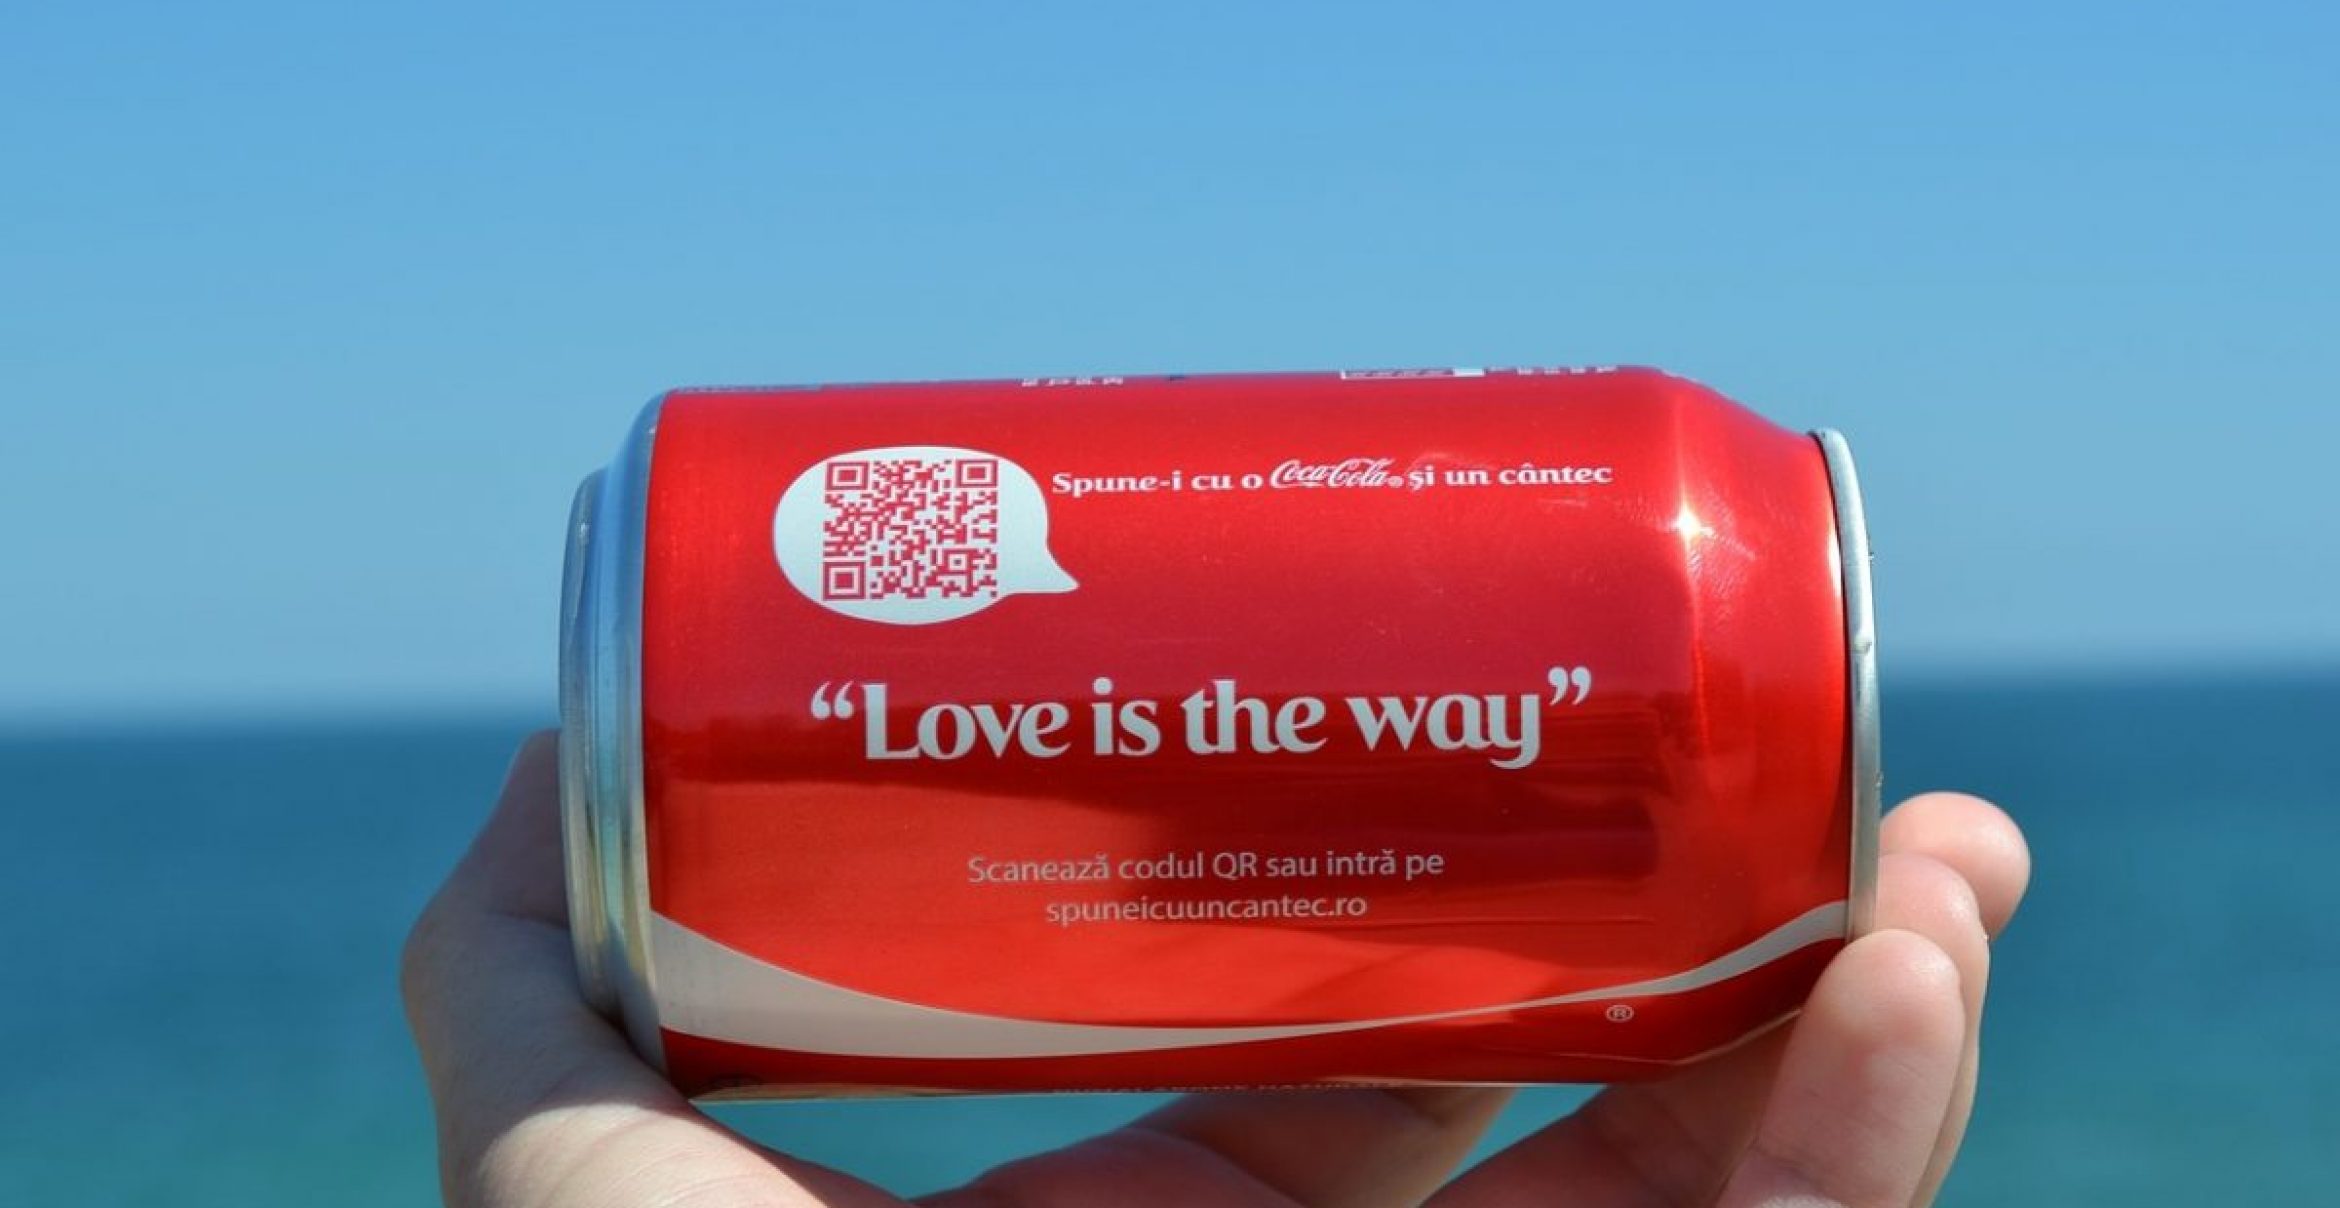 Alles andere als romantisch: Werbe-Fail bei Coca Cola und Delta